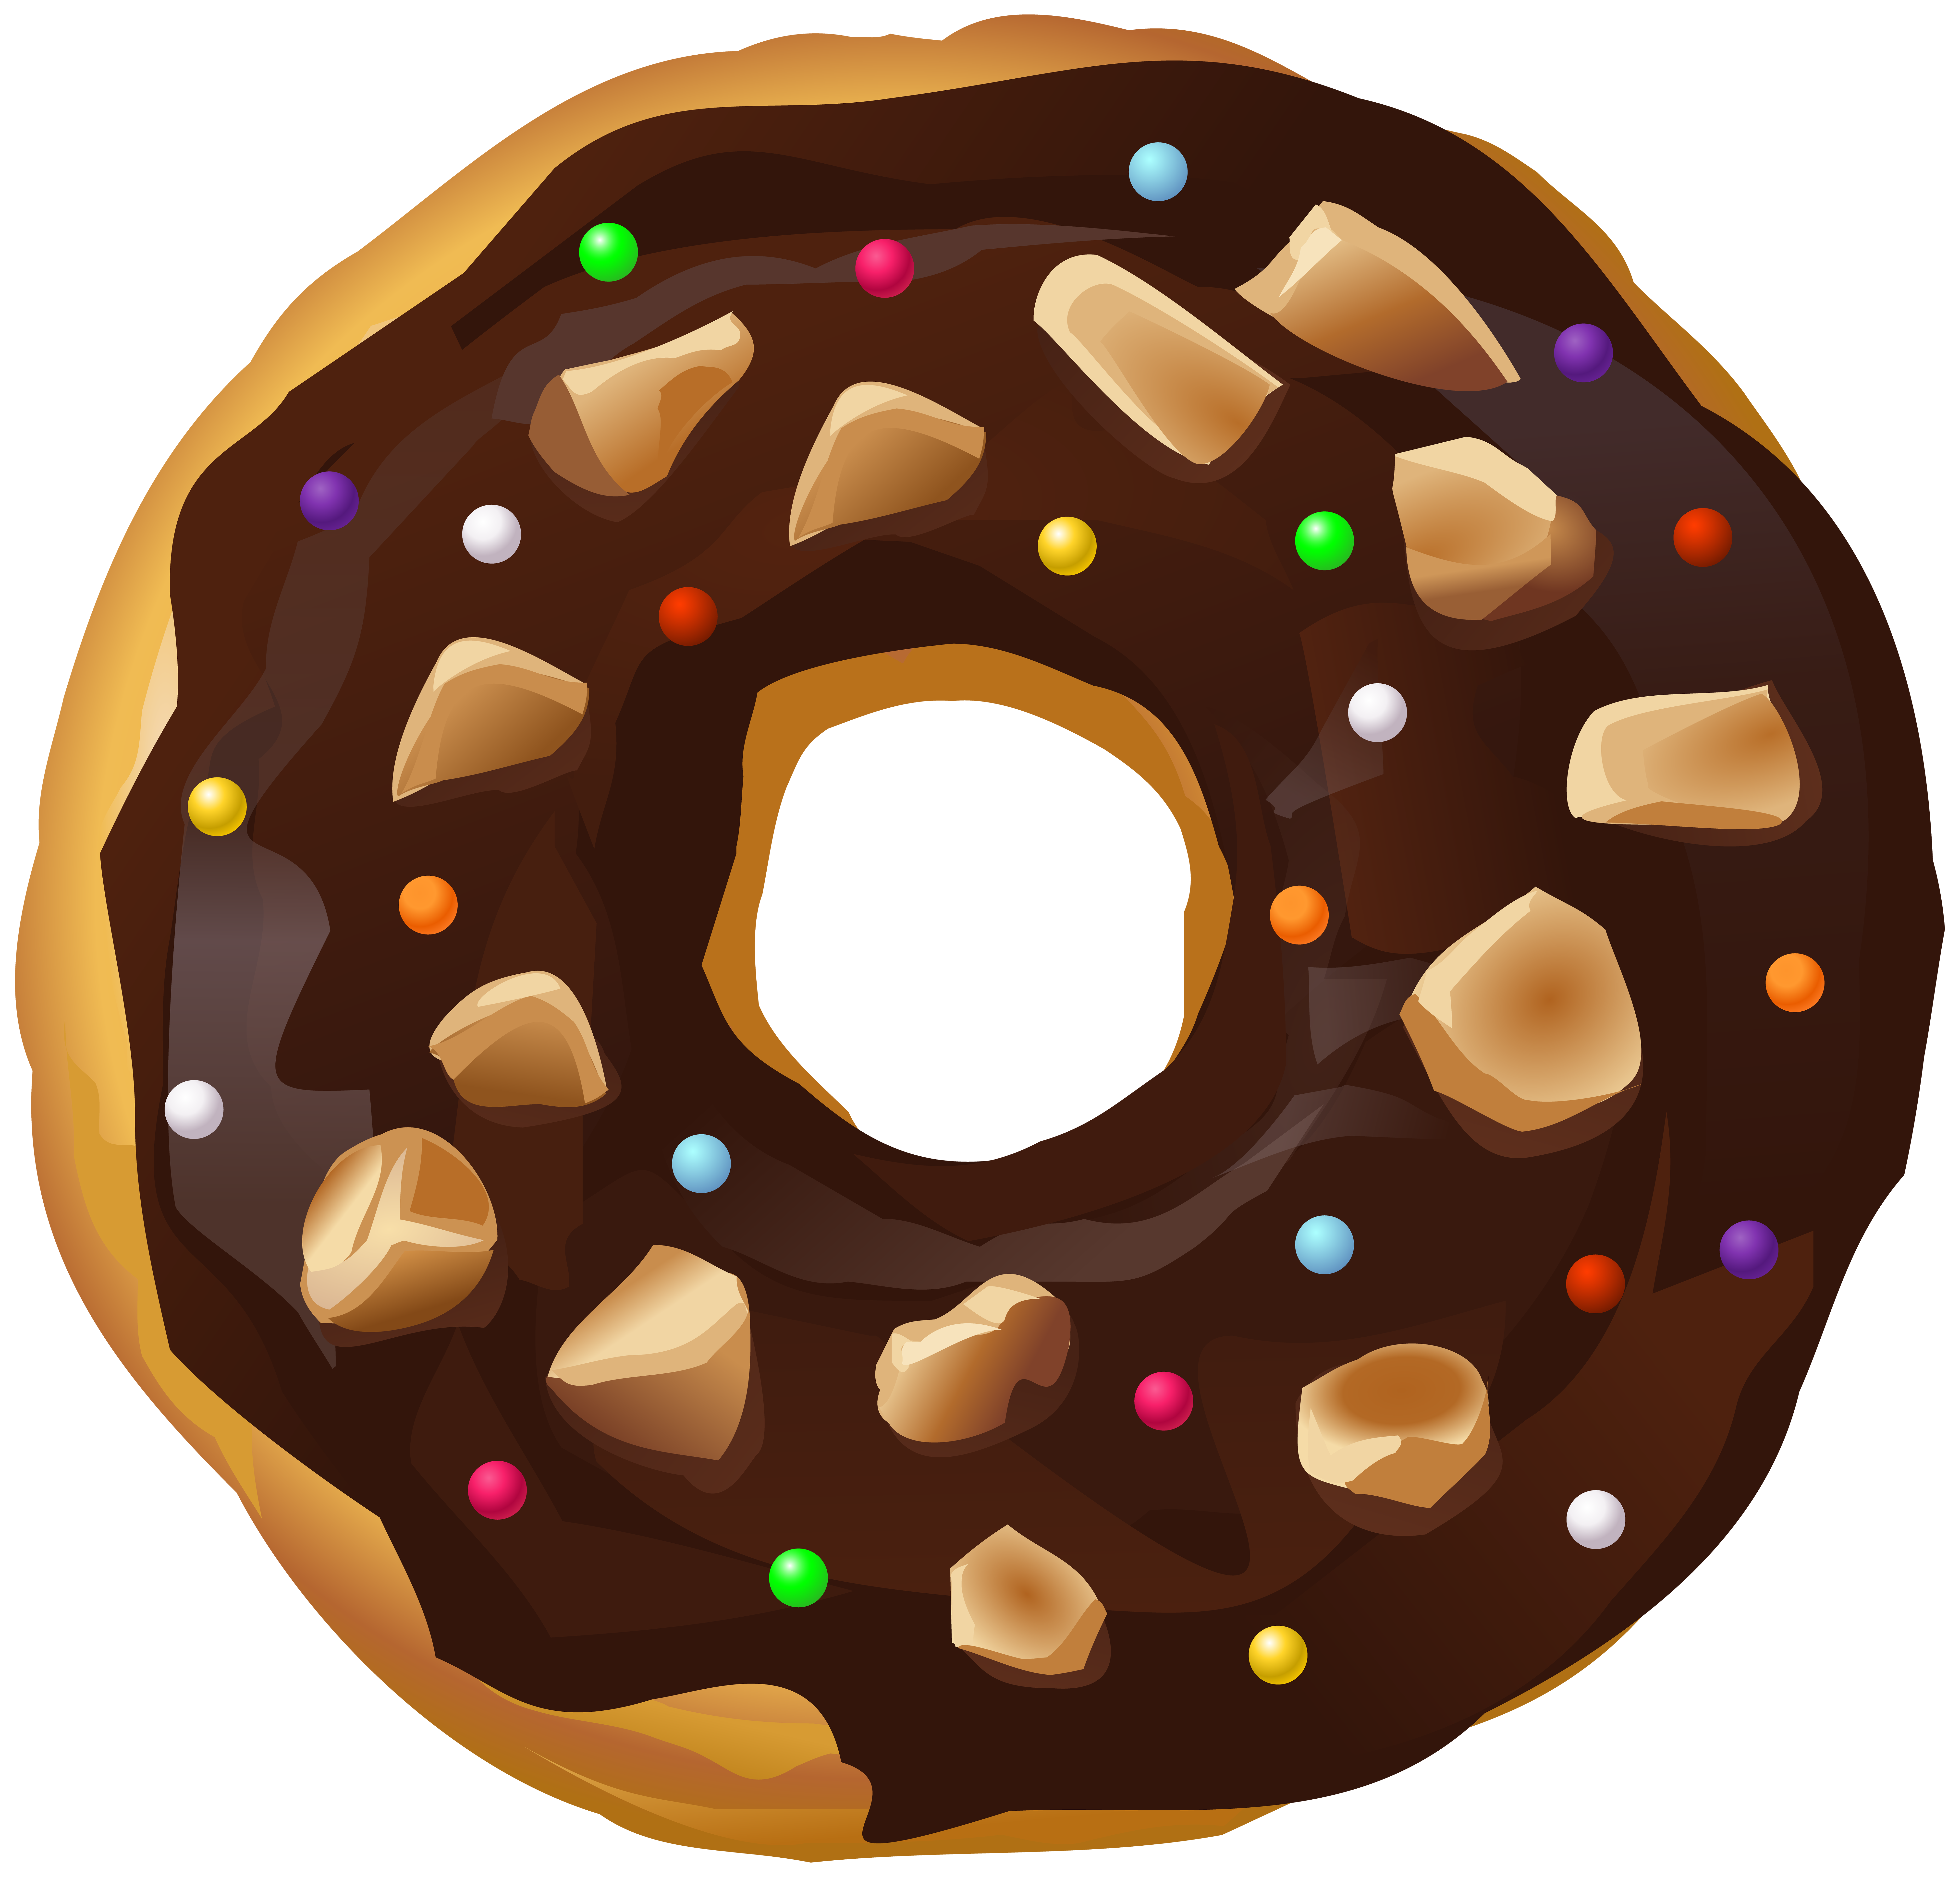 Drawn doughnut png tumblr tra